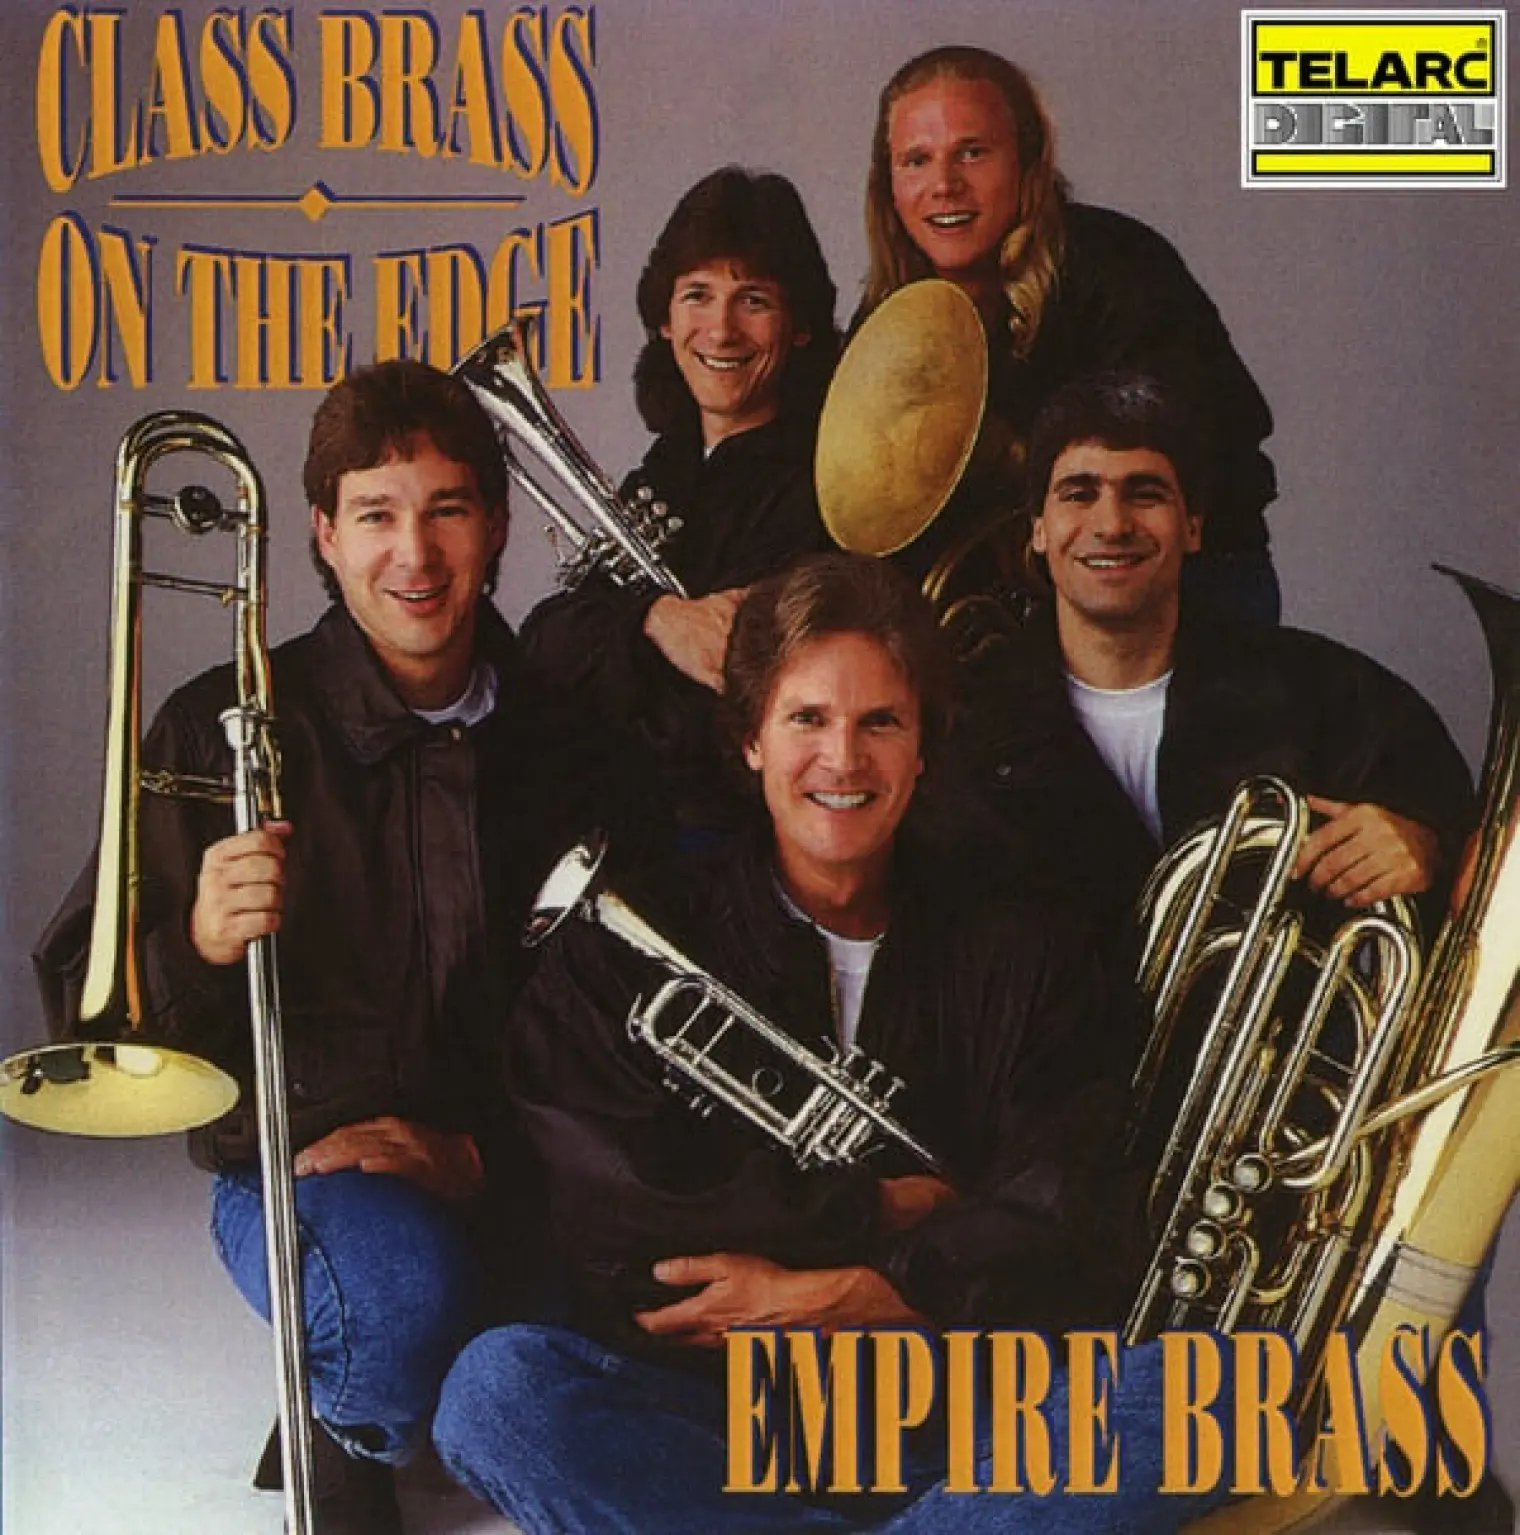 Class Brass: On the Edge -  Empire Brass 